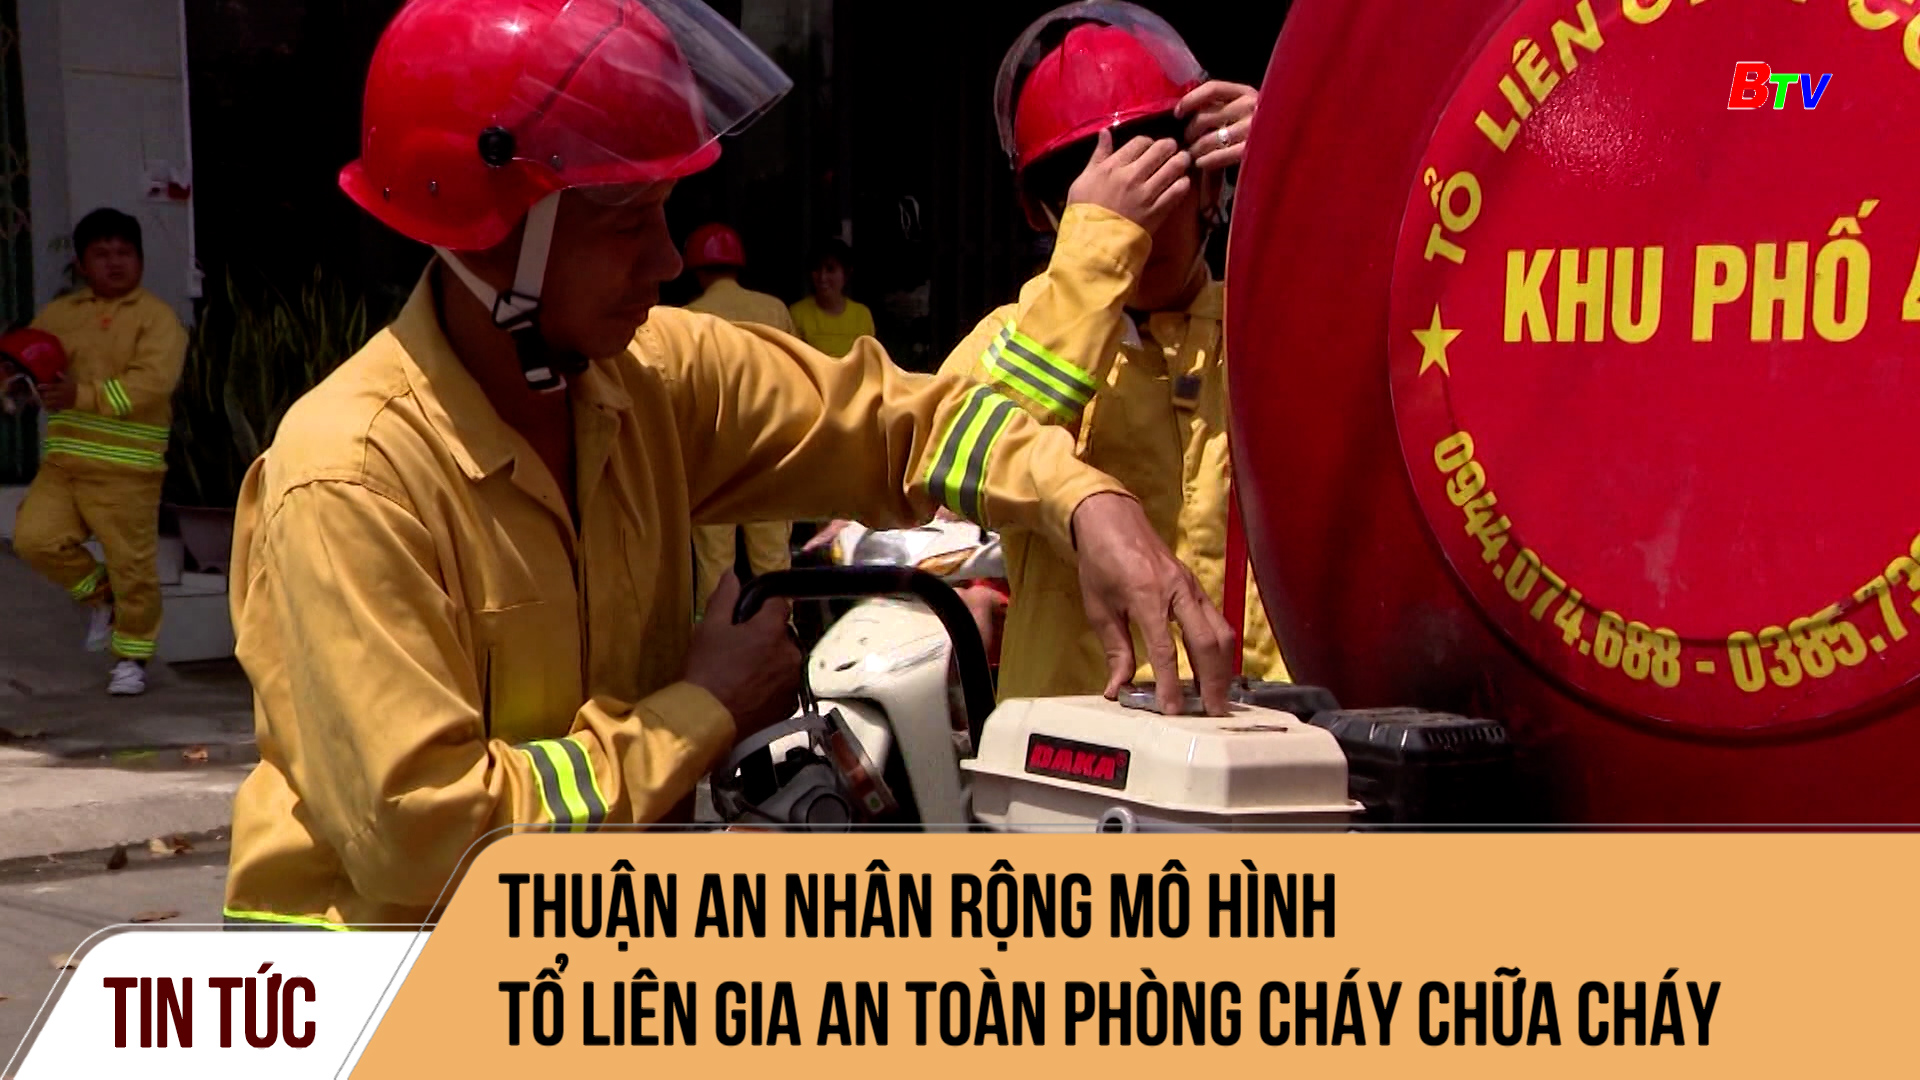 Thuận An nhân rộng mô hình Tổ liên gia an toàn phòng cháy chữa cháy